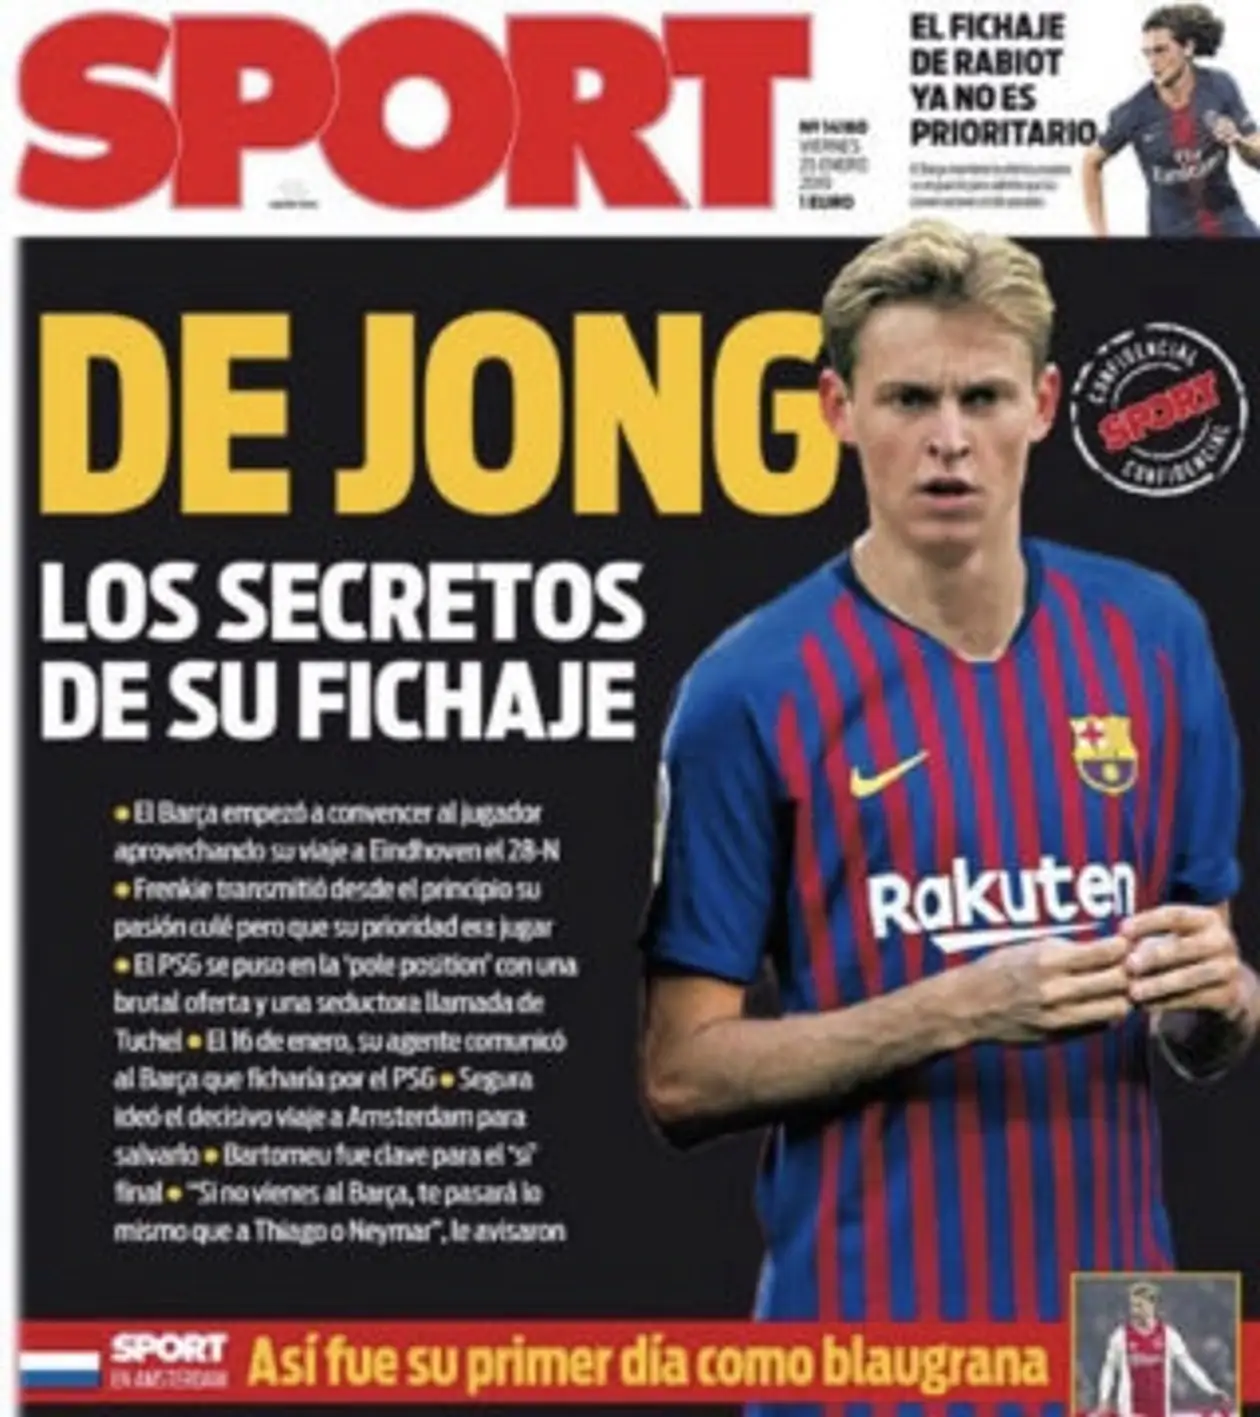 Іспанська преса: як журналісти «вбивають» футболістів.